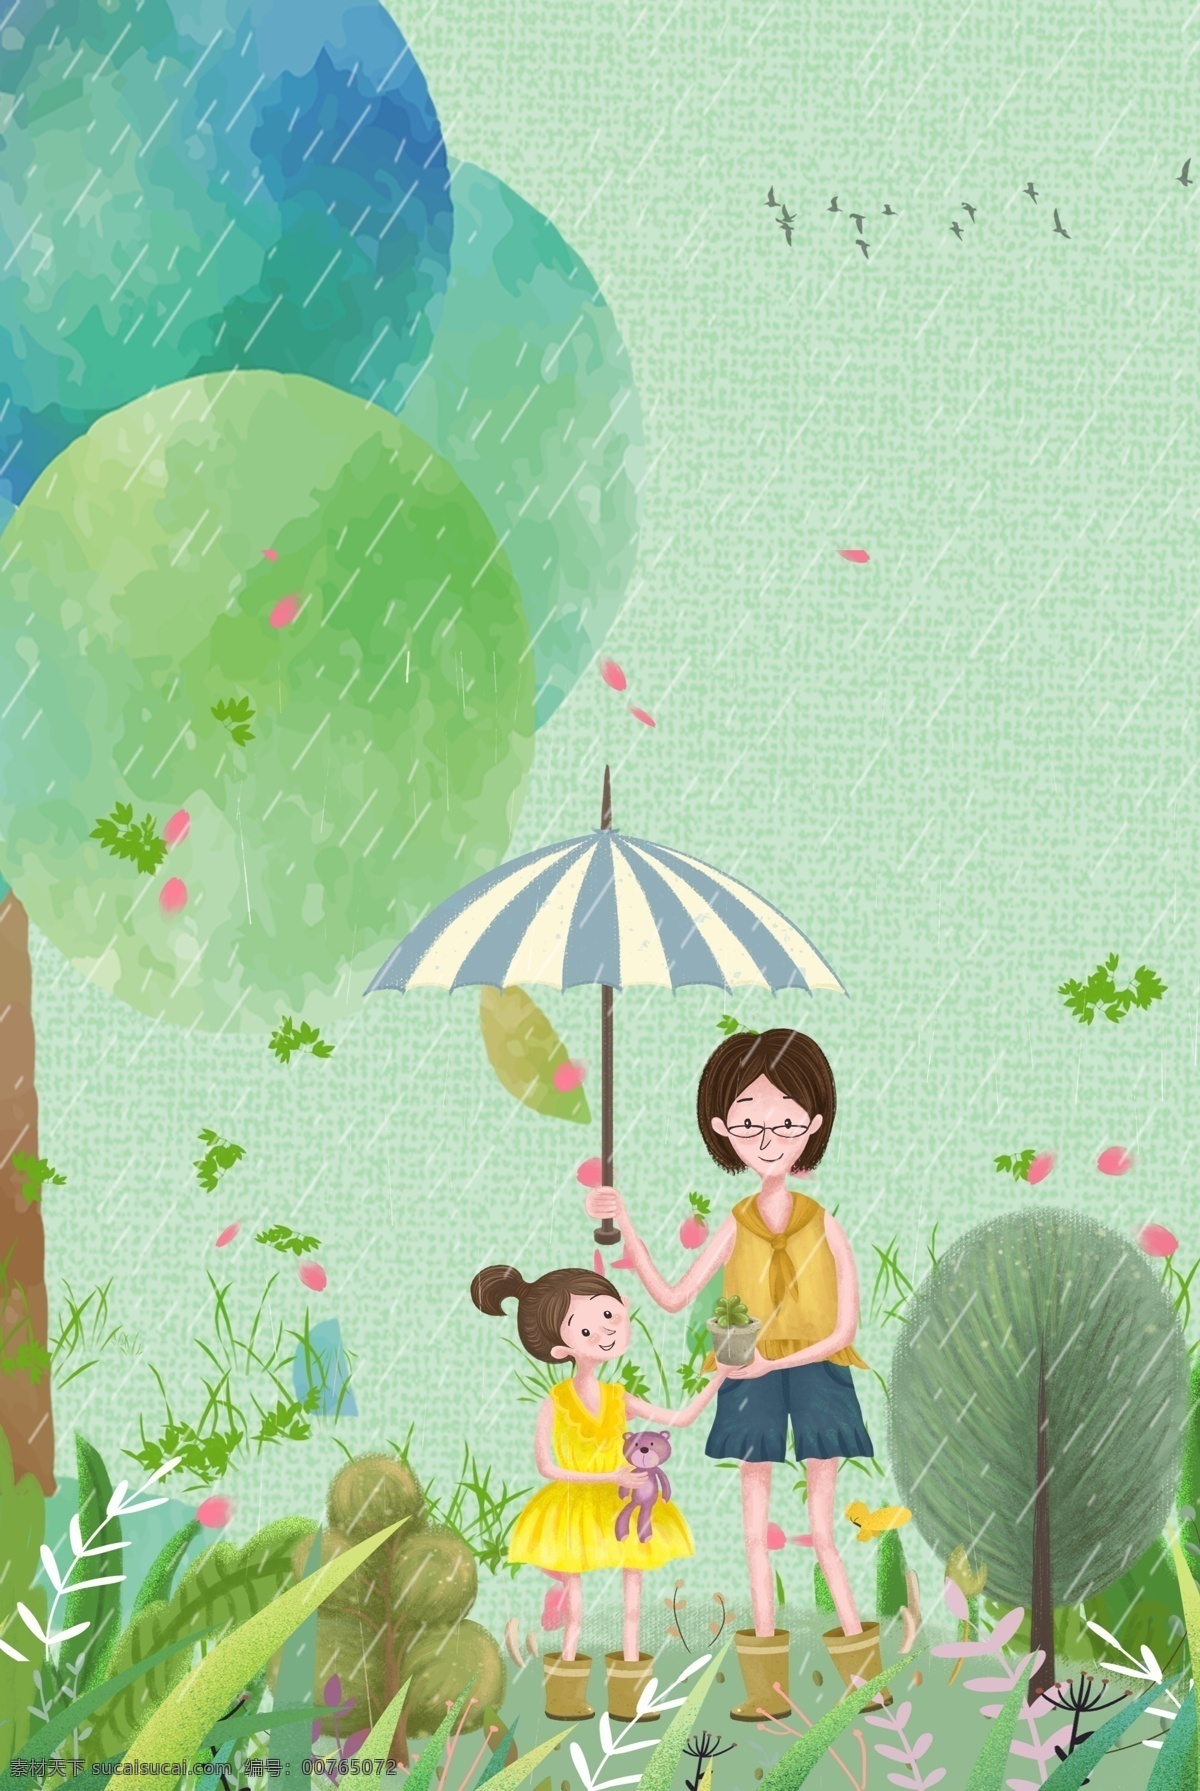 母亲节 春天 树下 母女 撑伞 手绘 插画 草丛 玩具熊 下雨 雨天 清明节 谷雨 夏天 大树 雨伞 温馨